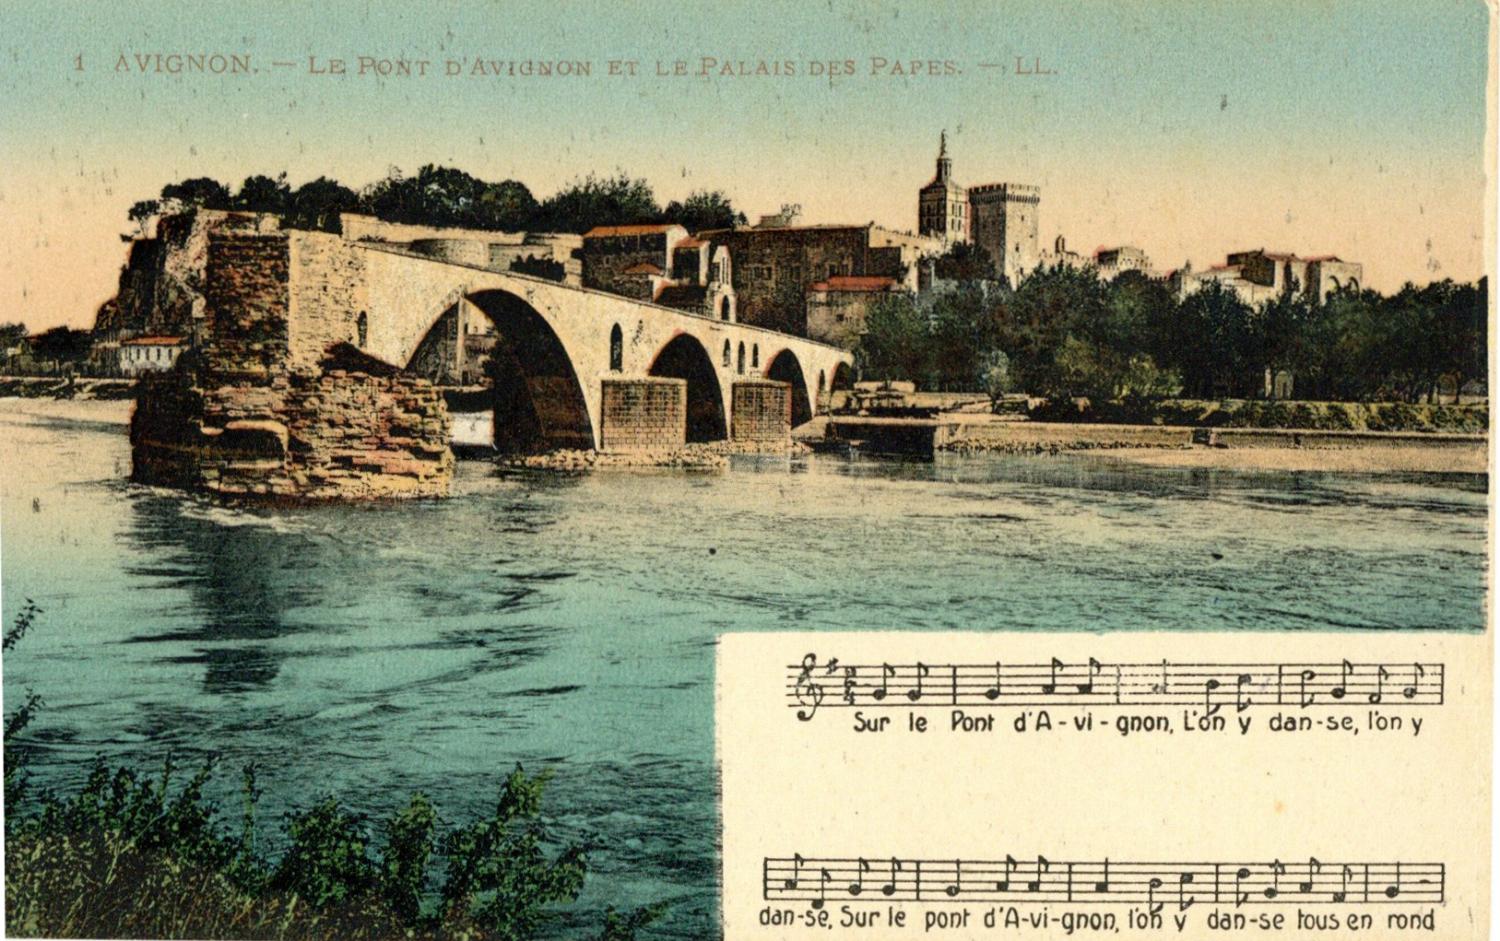 Avignon - Le Pont d'Avignon et le Palais des Papes.